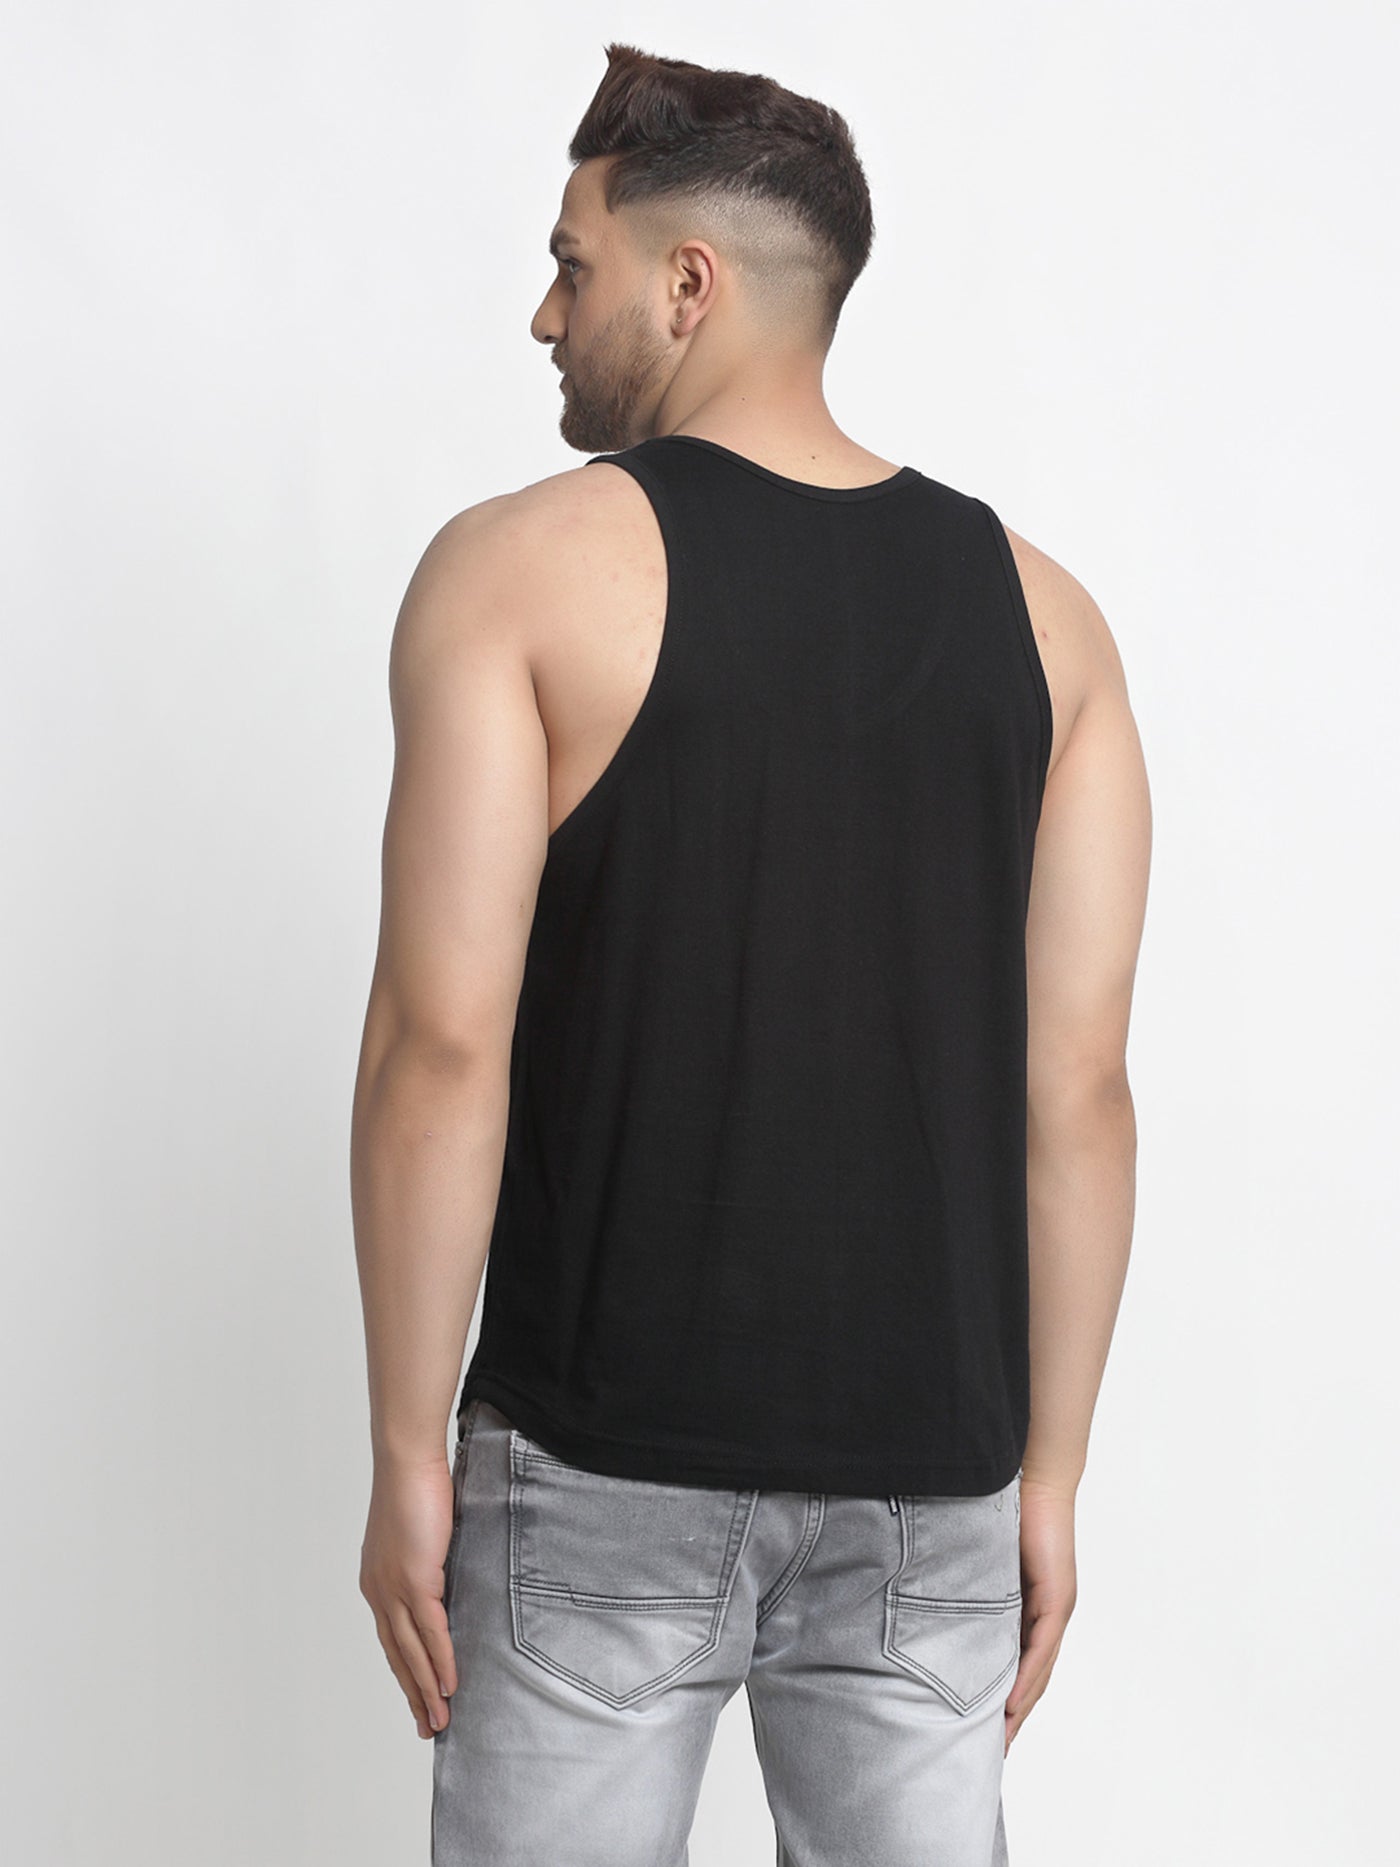 Men's Pack of 2 Black & White Printed Gym vest - Friskers